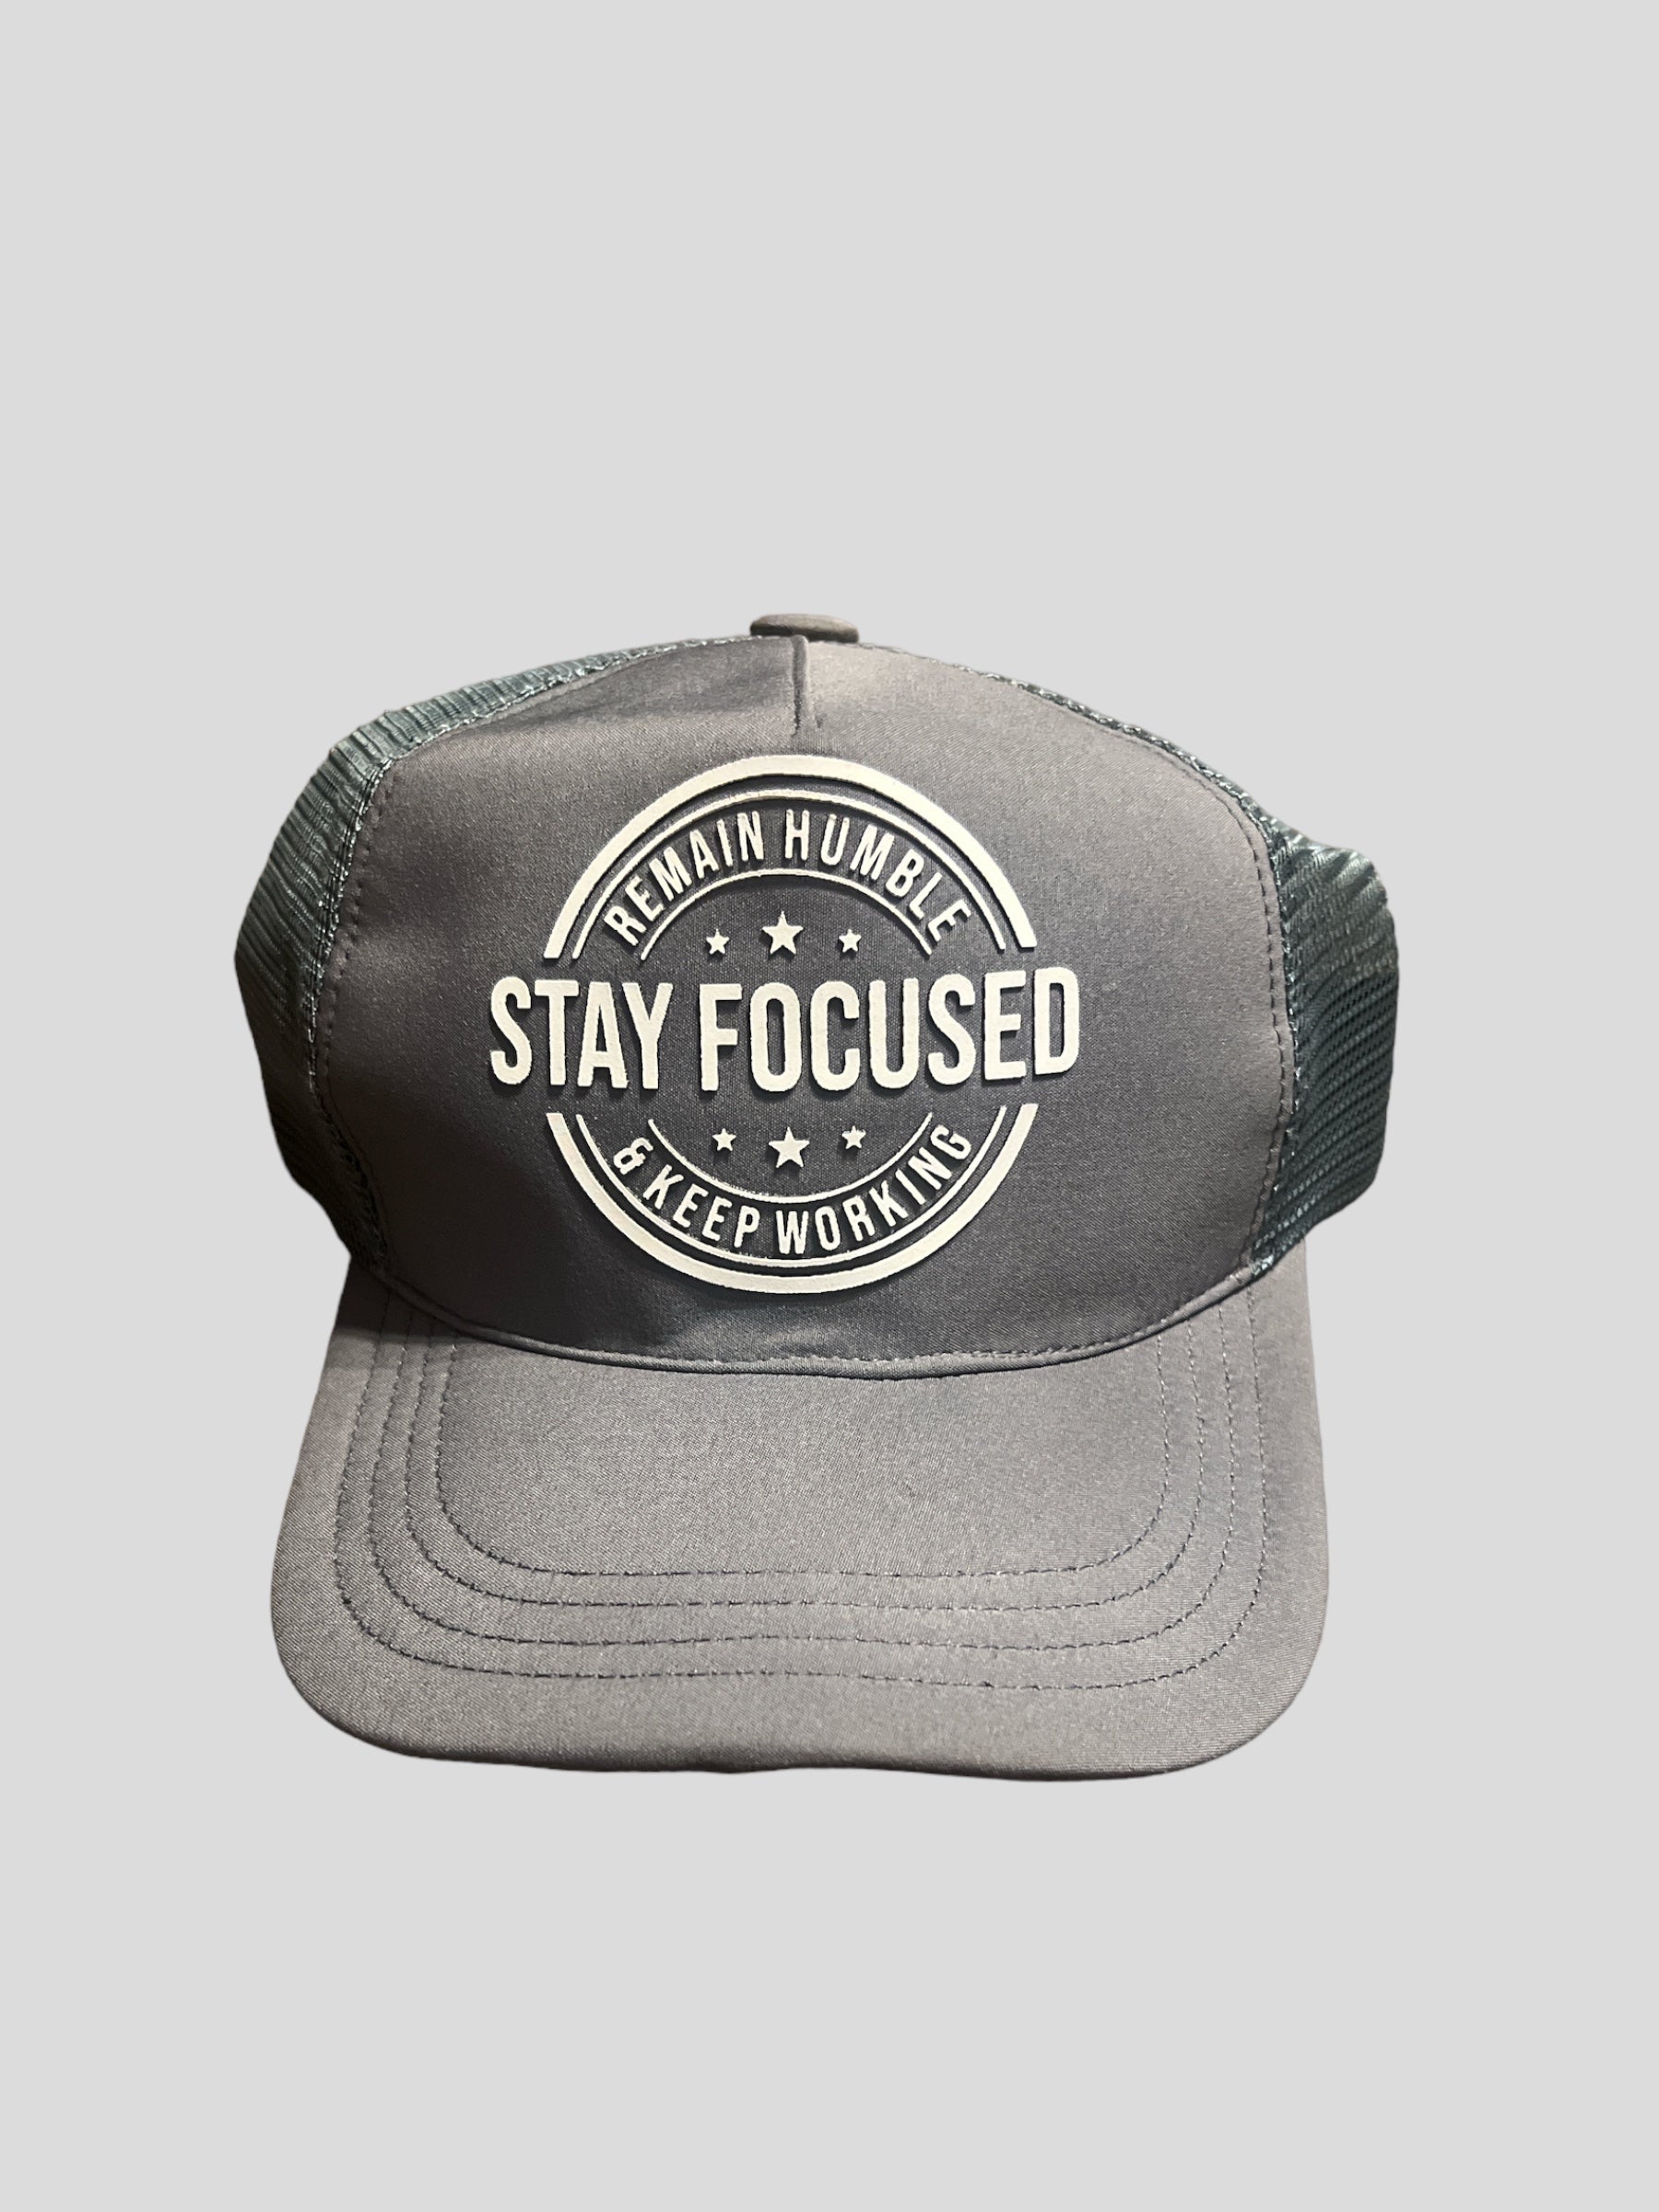 Stay Focused Trucker Hats